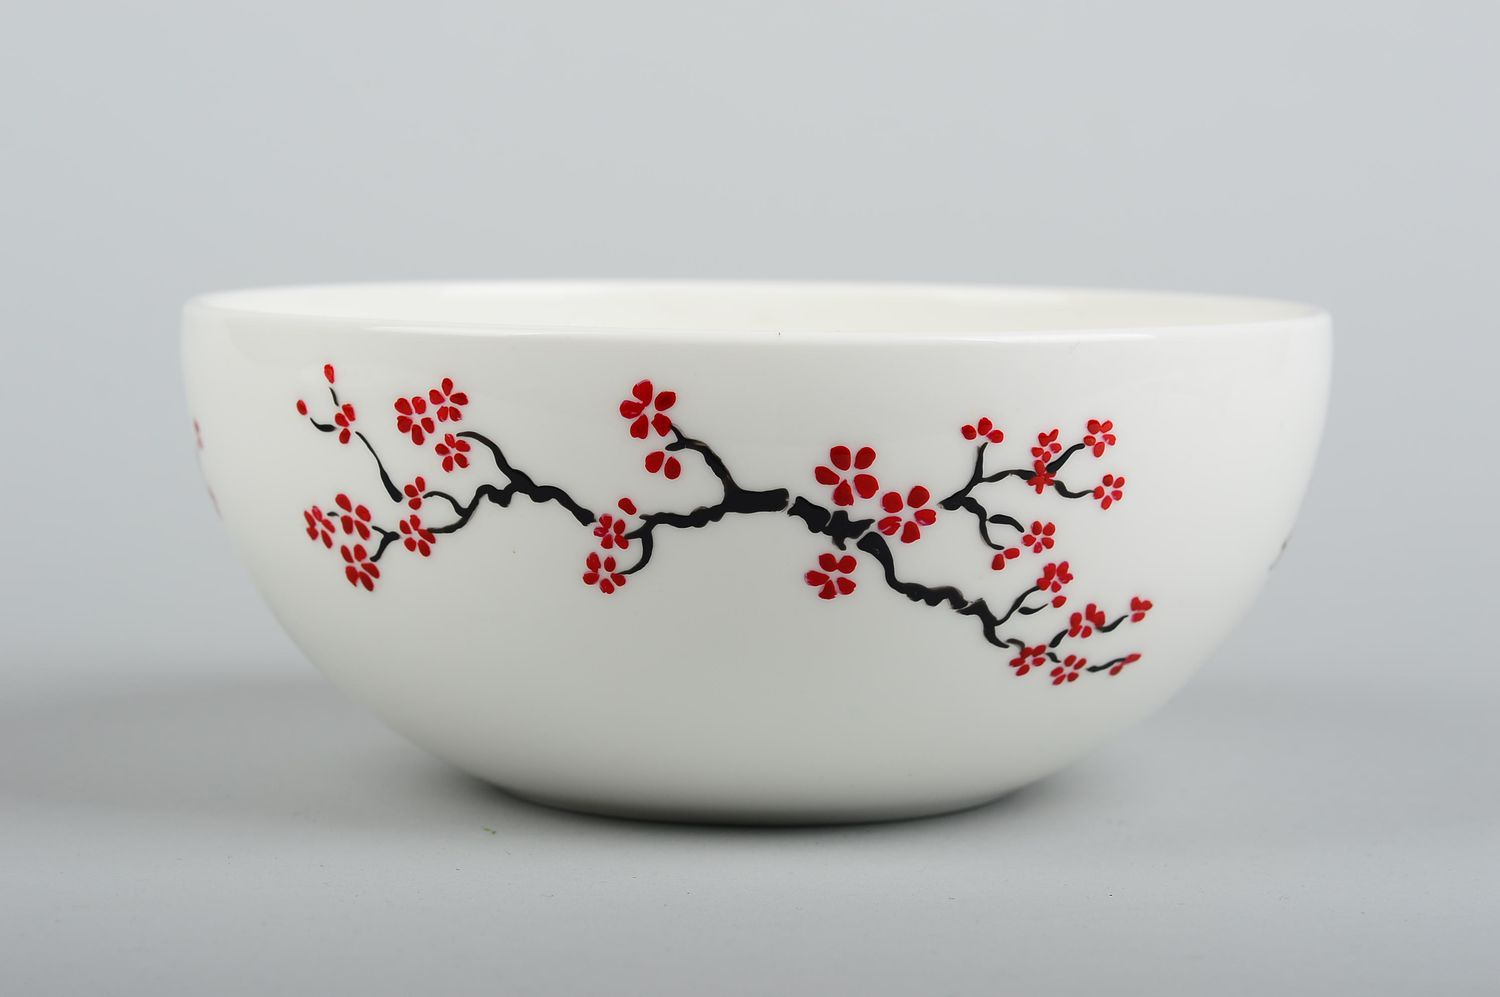 Глубокая тарелка ручной работы посуда для кухни с цветочками глиняная посуда фото 3